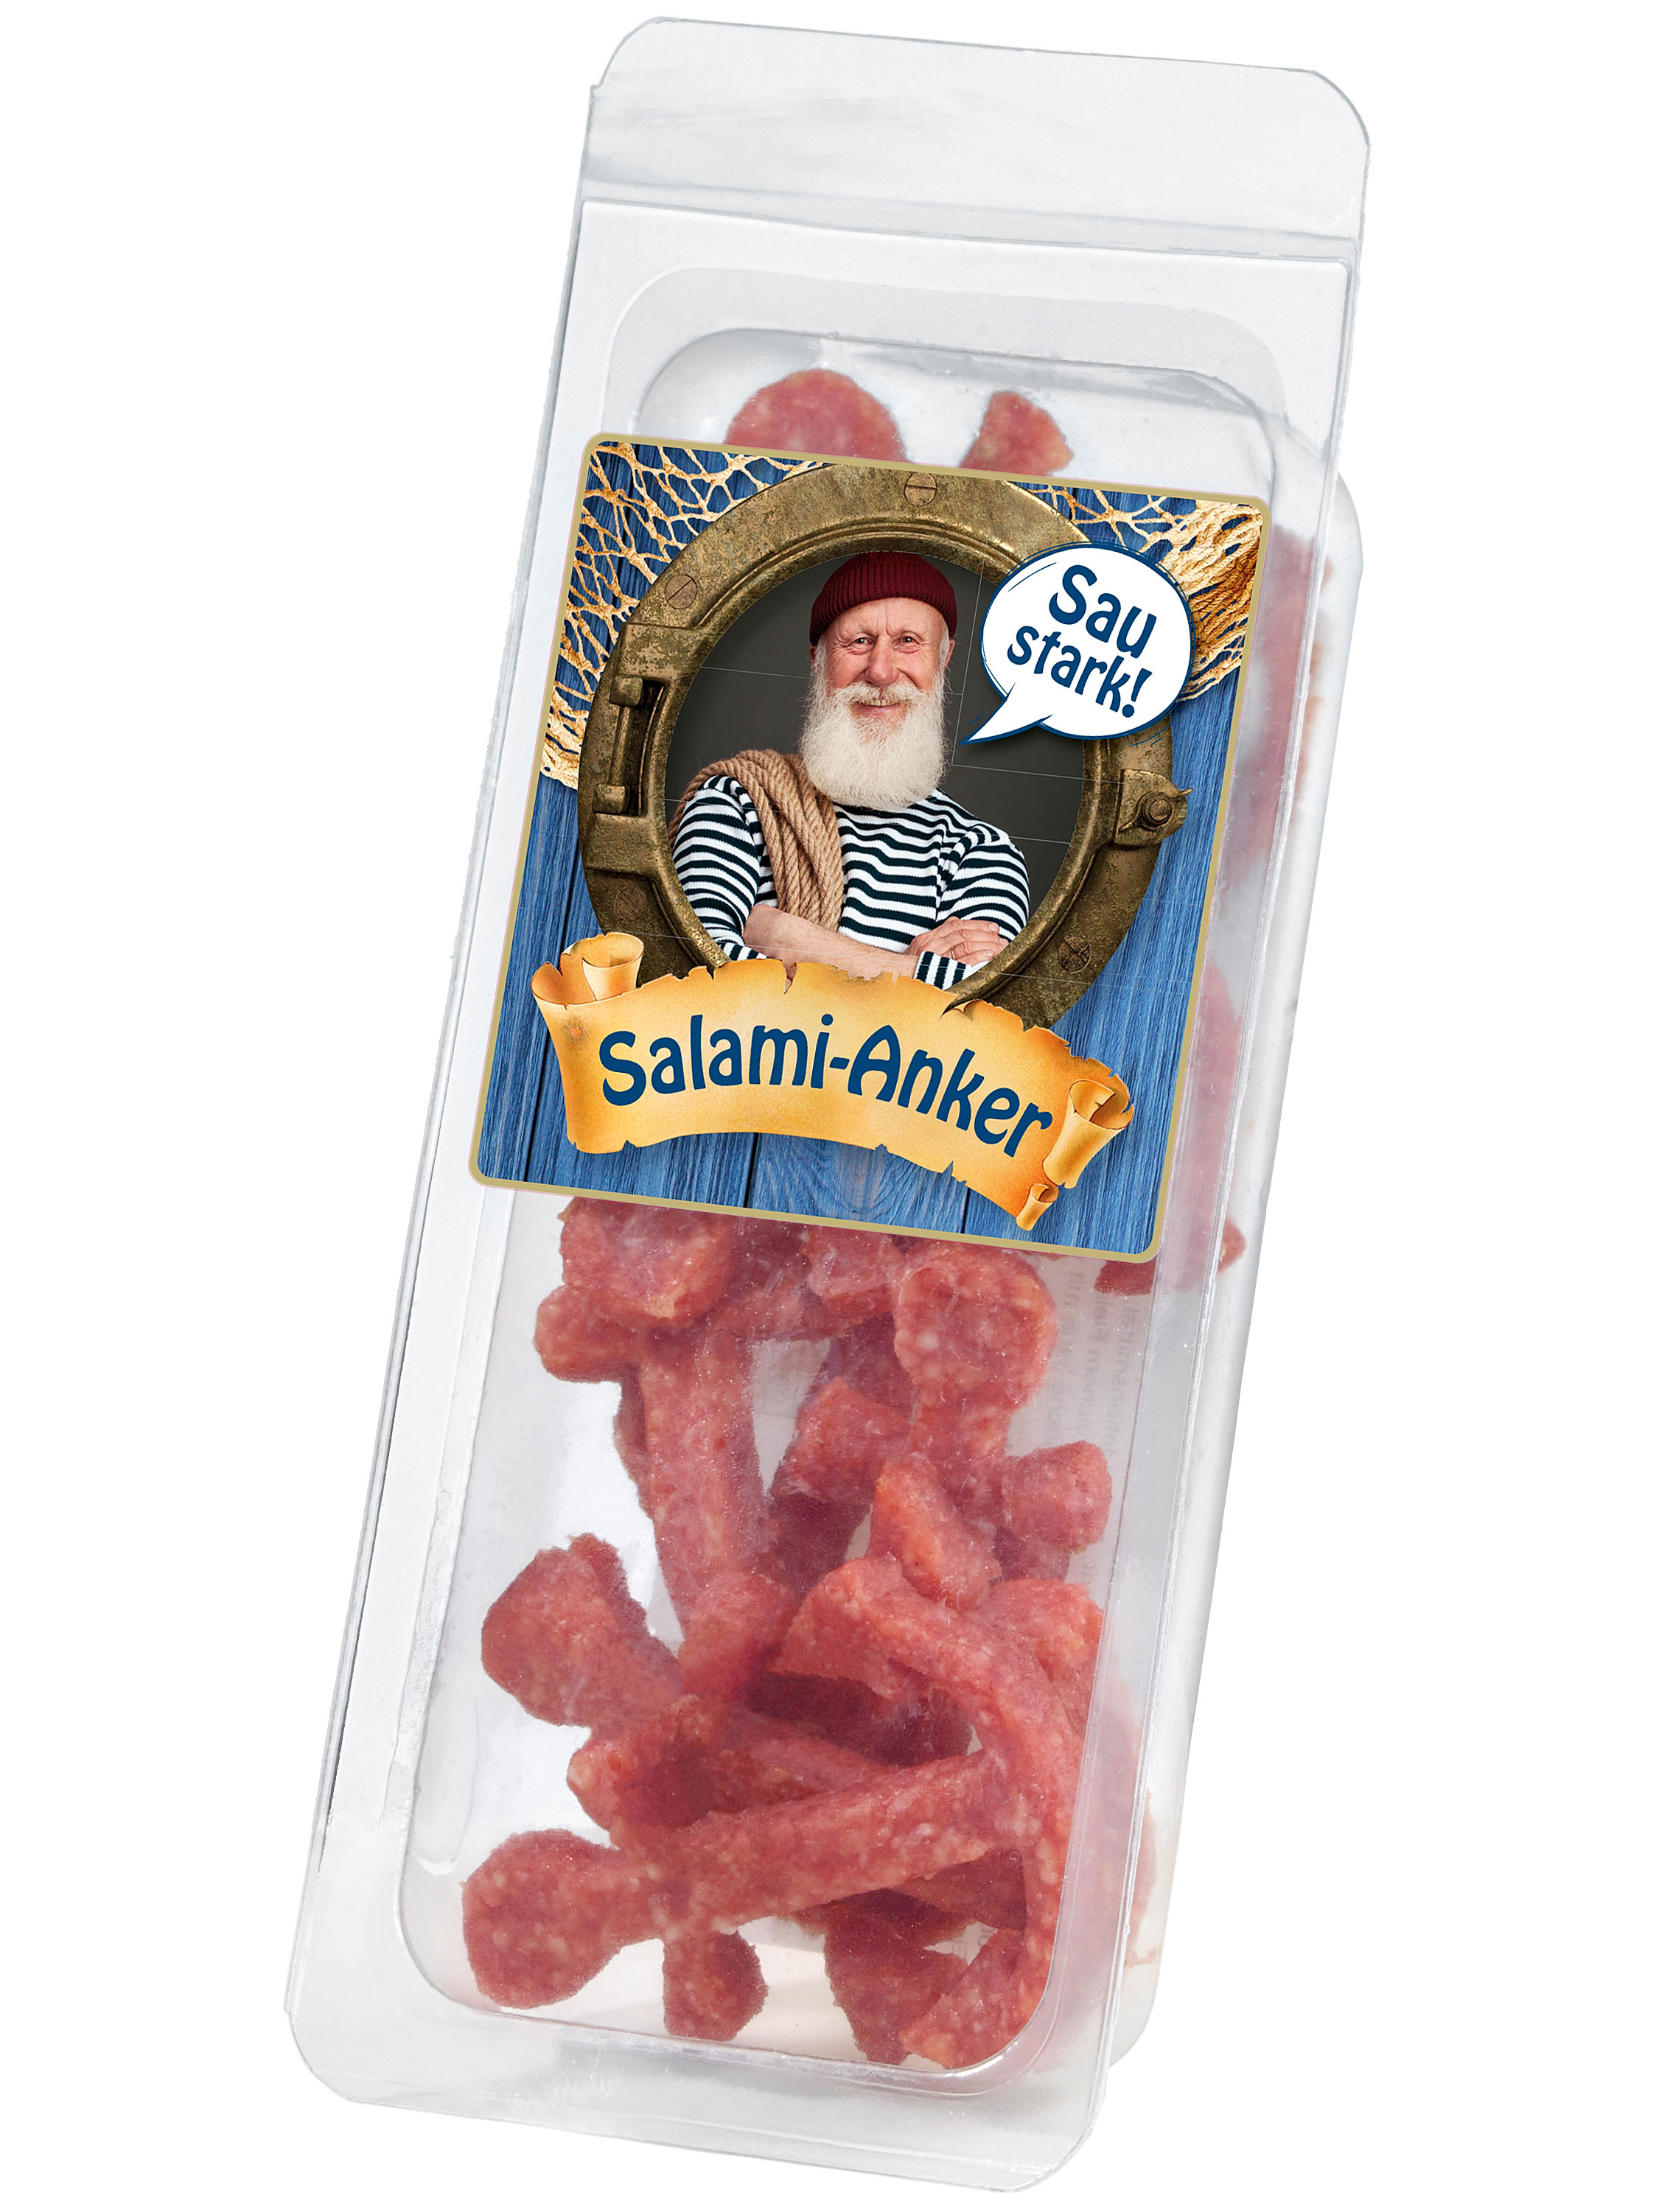 Salami-Anker